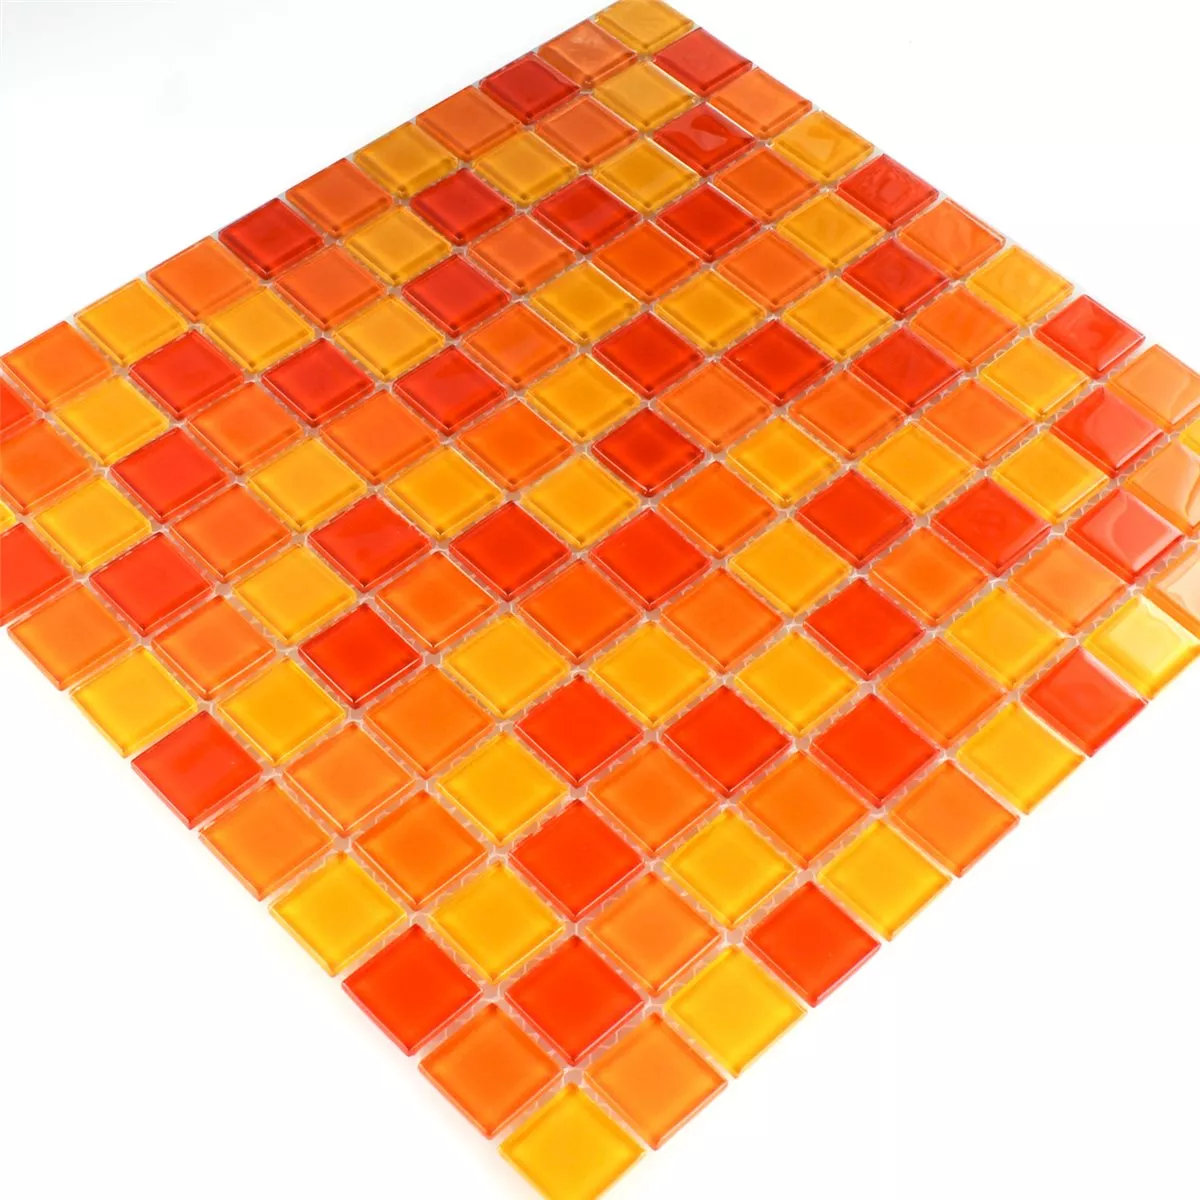 Mozaik Csempe Üveg Piros Narancs Sárga 25x25x4mm